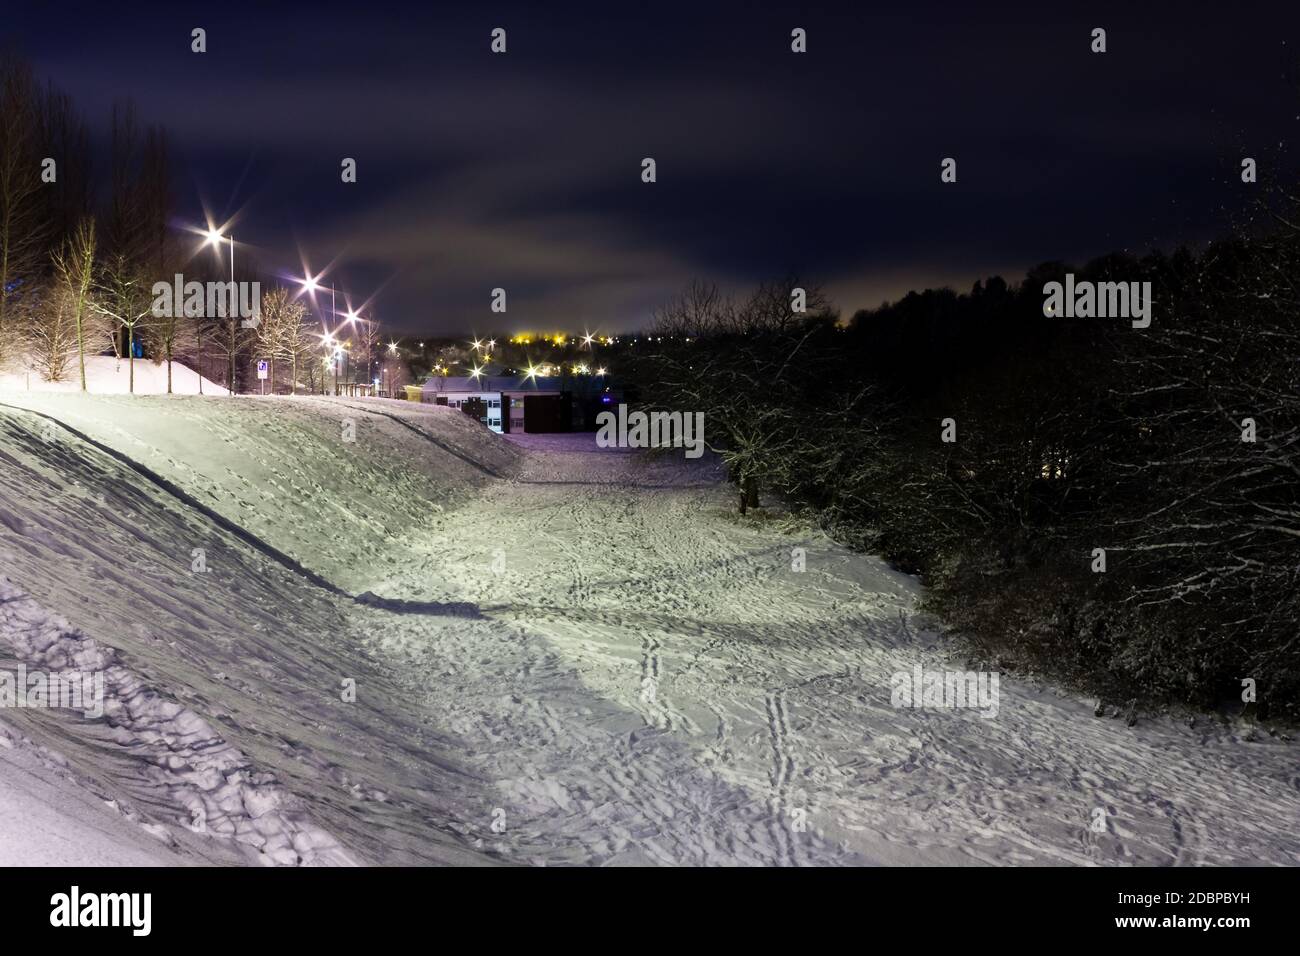 La nuit, dans une petite ville, des routes enneigées ont été couvertes Banque D'Images